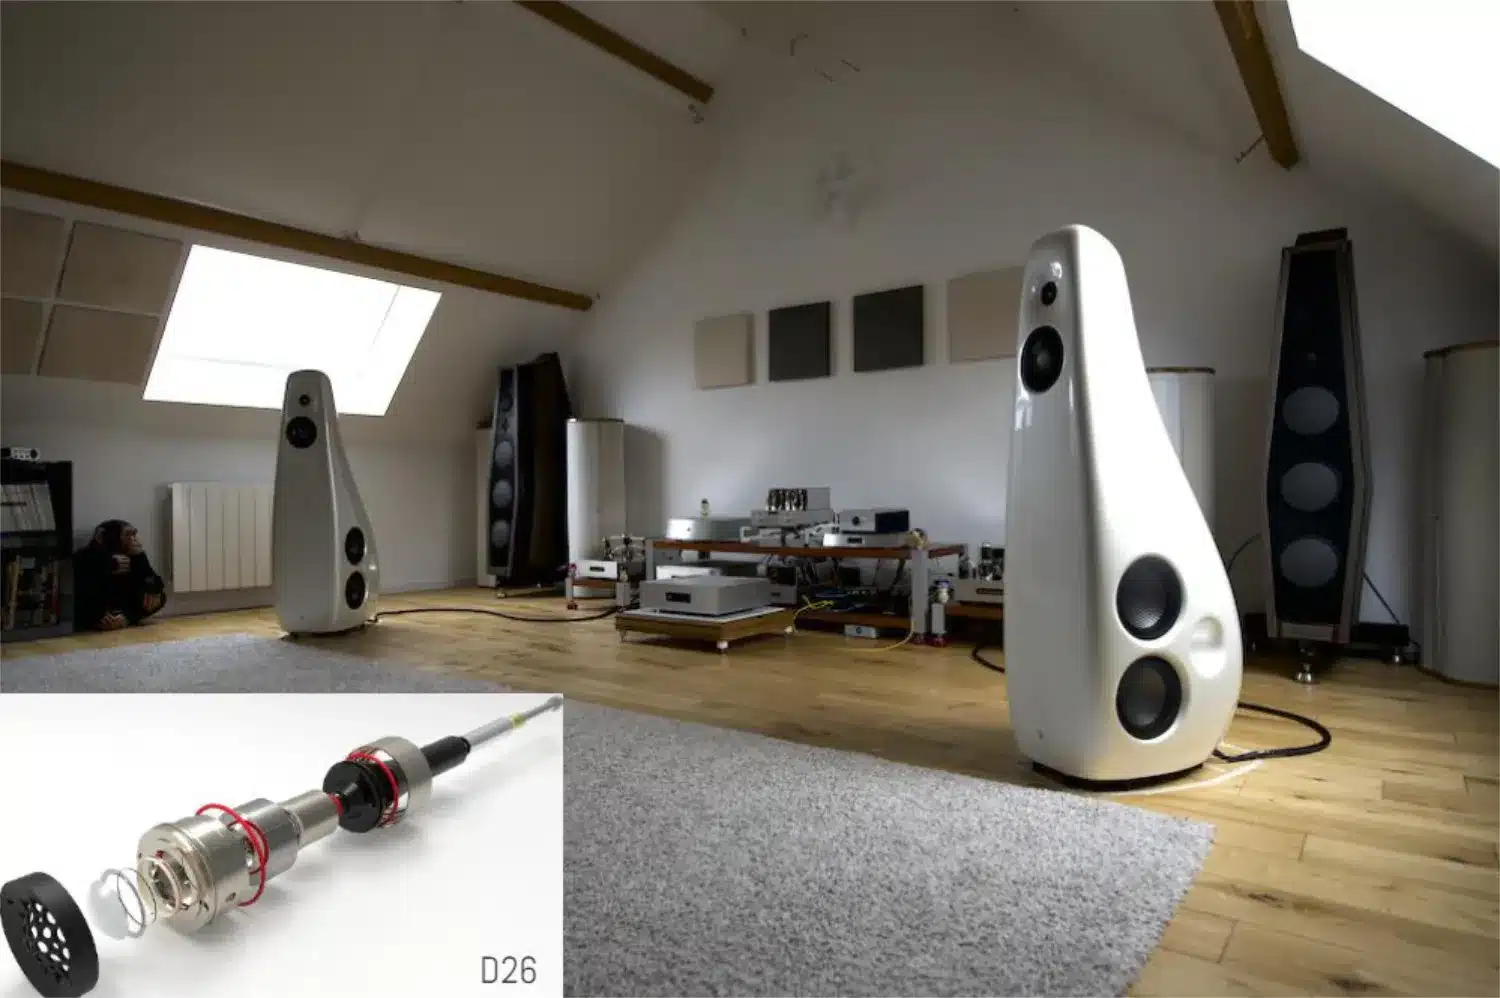 Salon moderne sous toiture doté d'équipements audio haut de gamme dont des Vivid Audio Kaya 90 testées dans l'article, des amplificateurs et une platine vinyle (par 1877.audio)